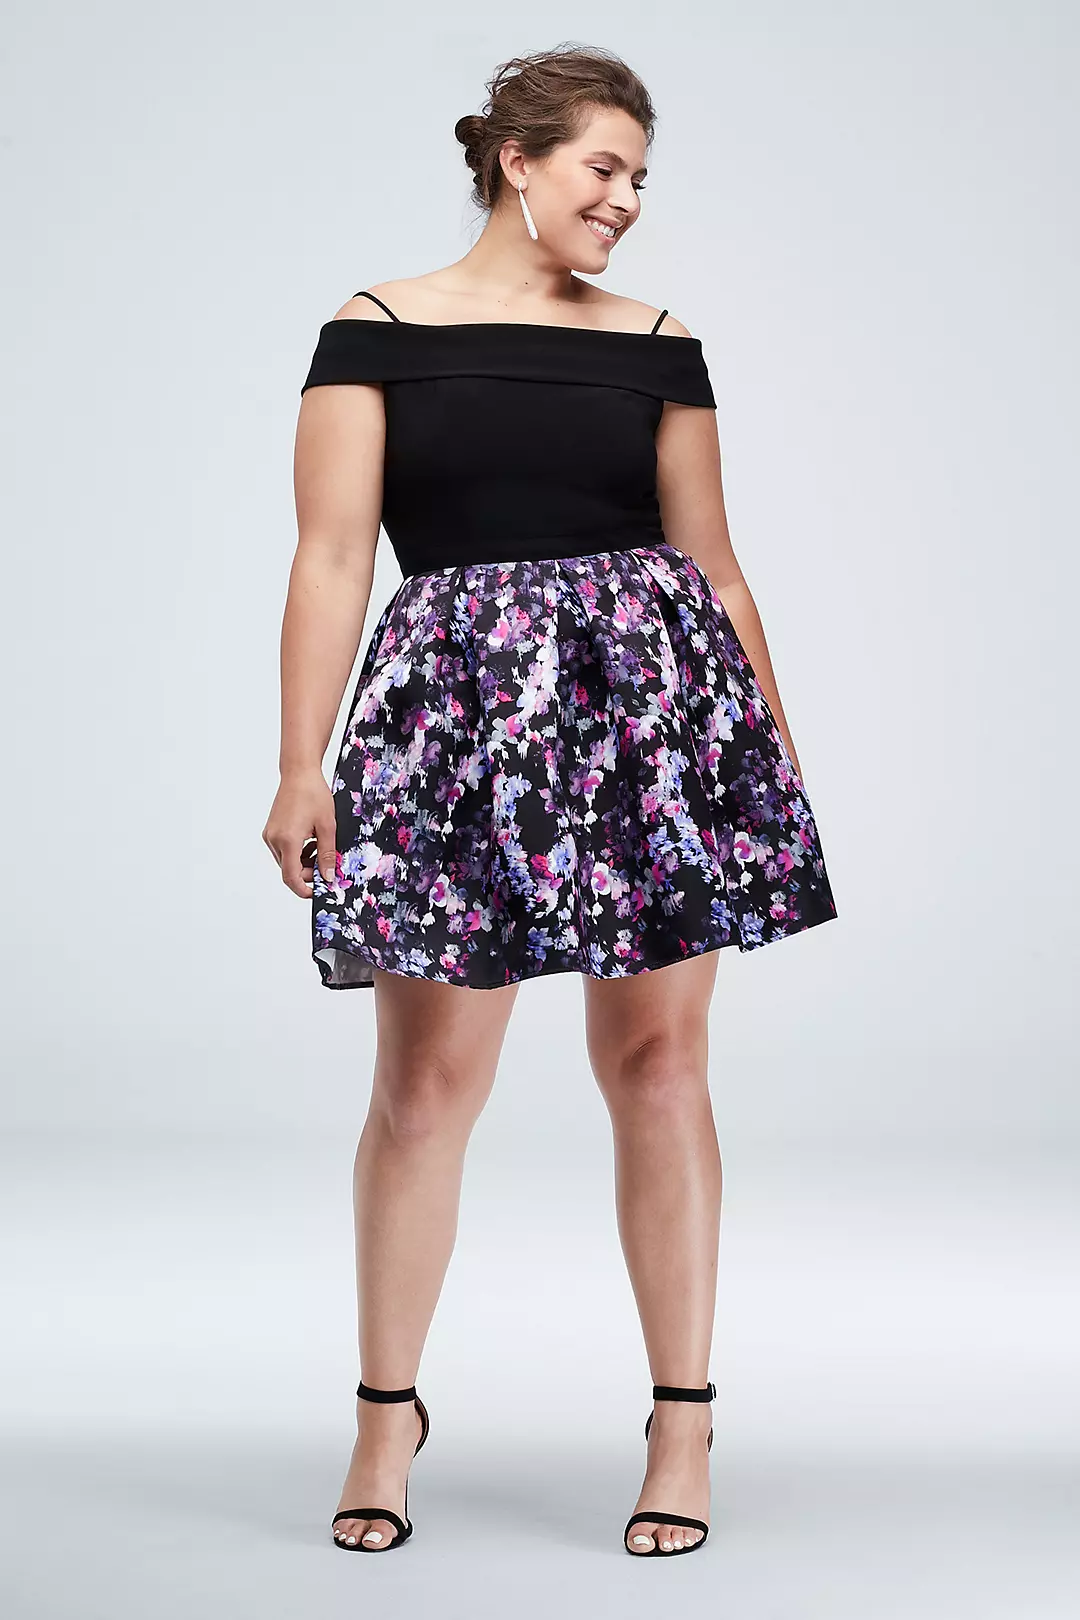 Foldover Off-the-Shoulder Floral Skirt Mini Dress Image